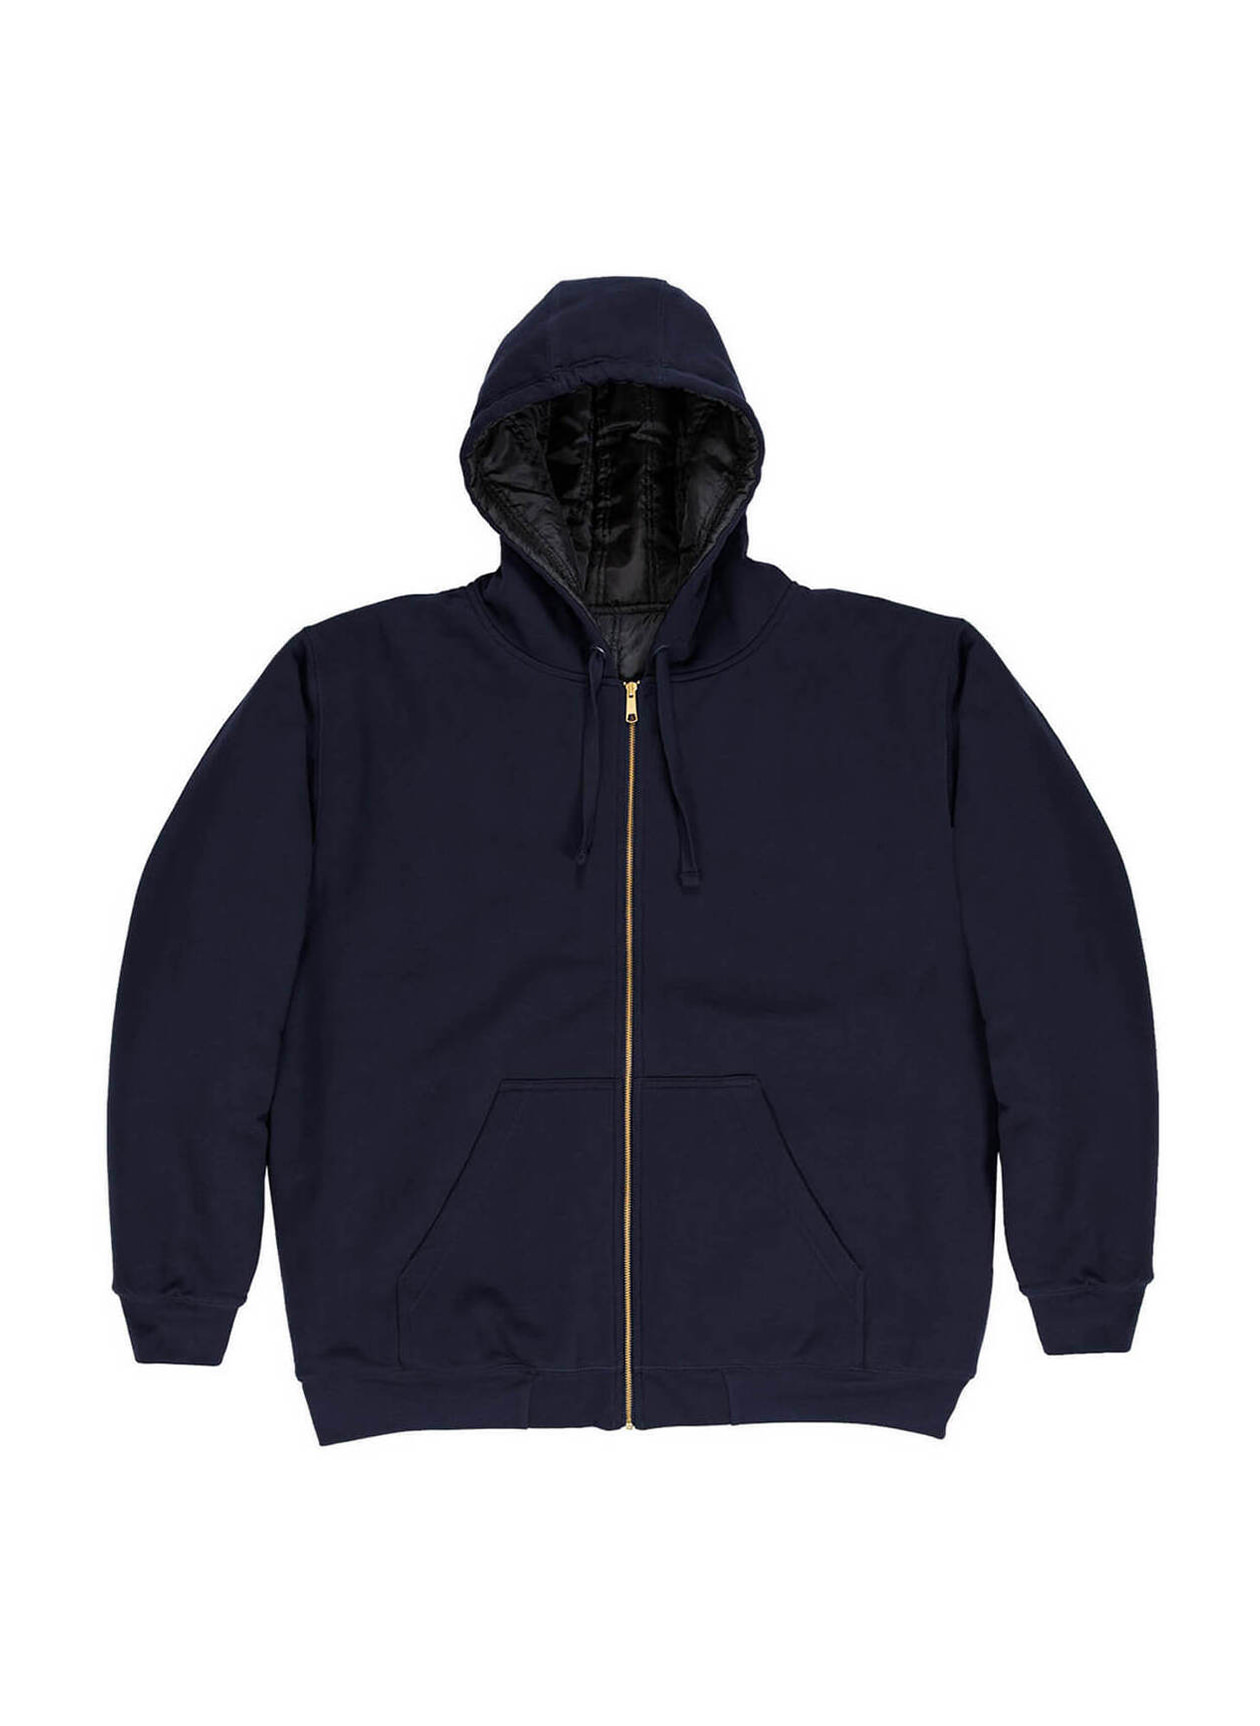 Berne Men's Navy Glacier Full-Zip Hooded Jacket